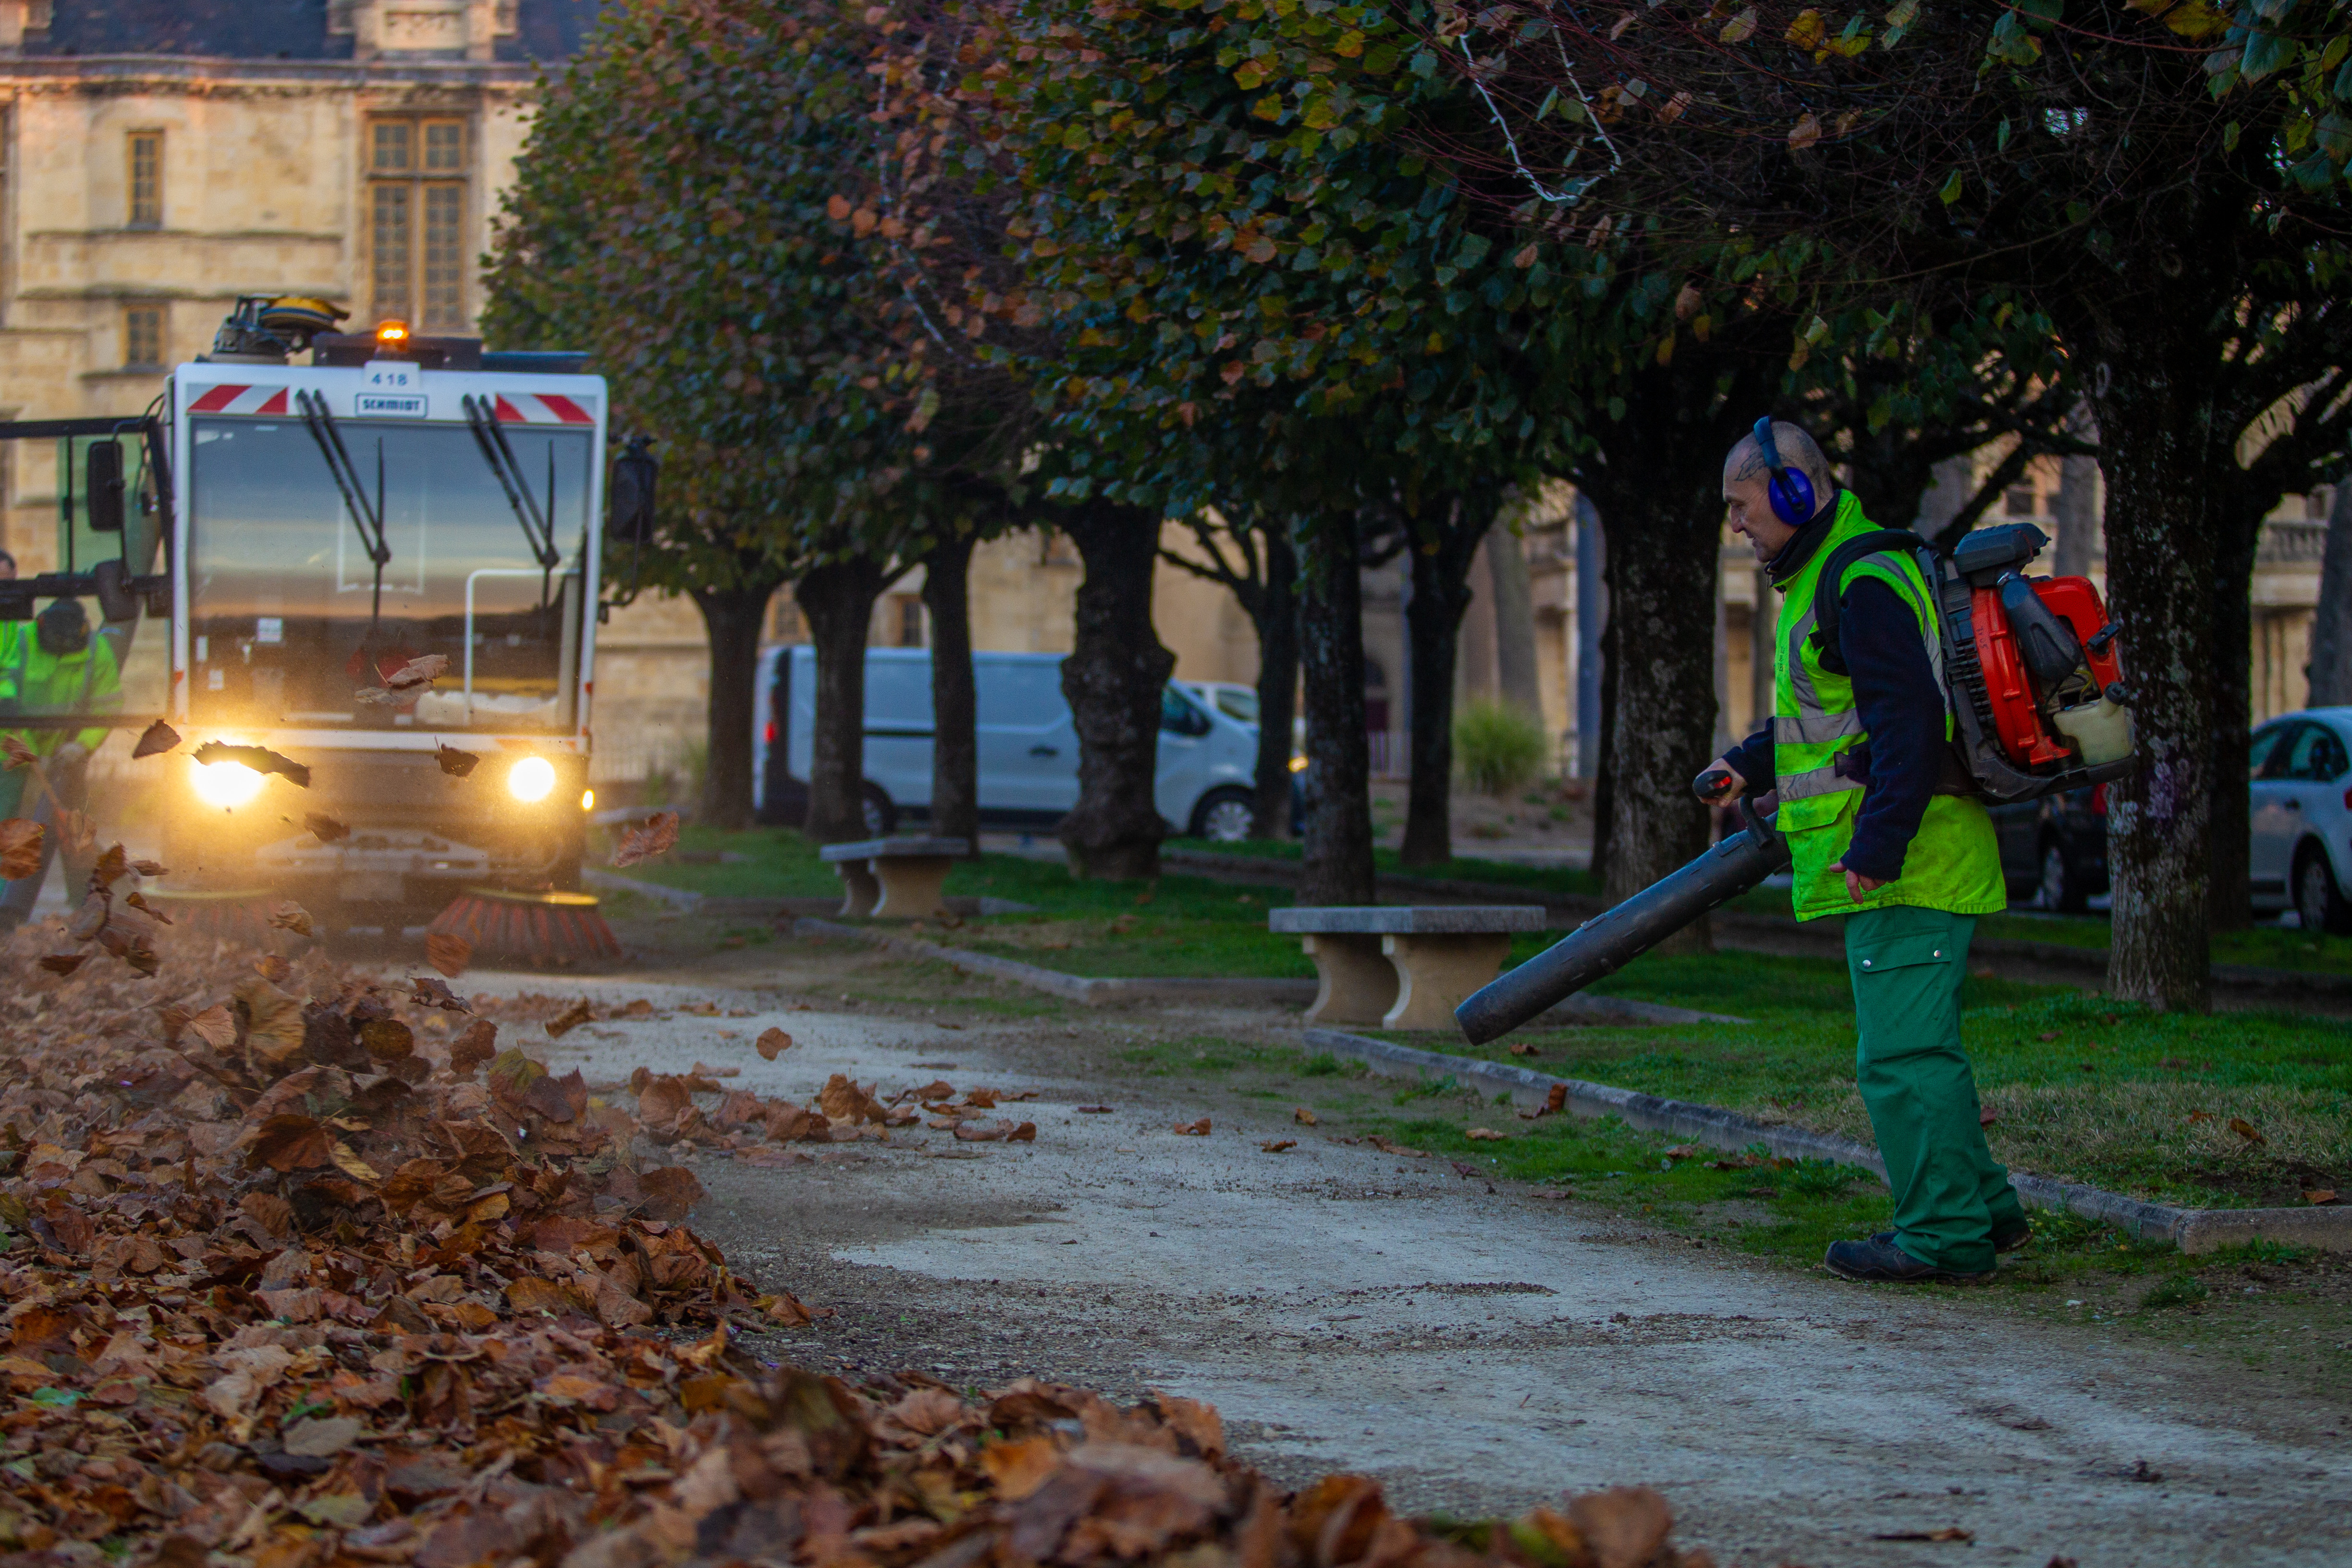 De bon matin, les agents des Espaces verts et le service Propreté de la Ville de Nevers sont à pied d'oeuvre pour débarrasser l'espace public des feuilles d'automne.